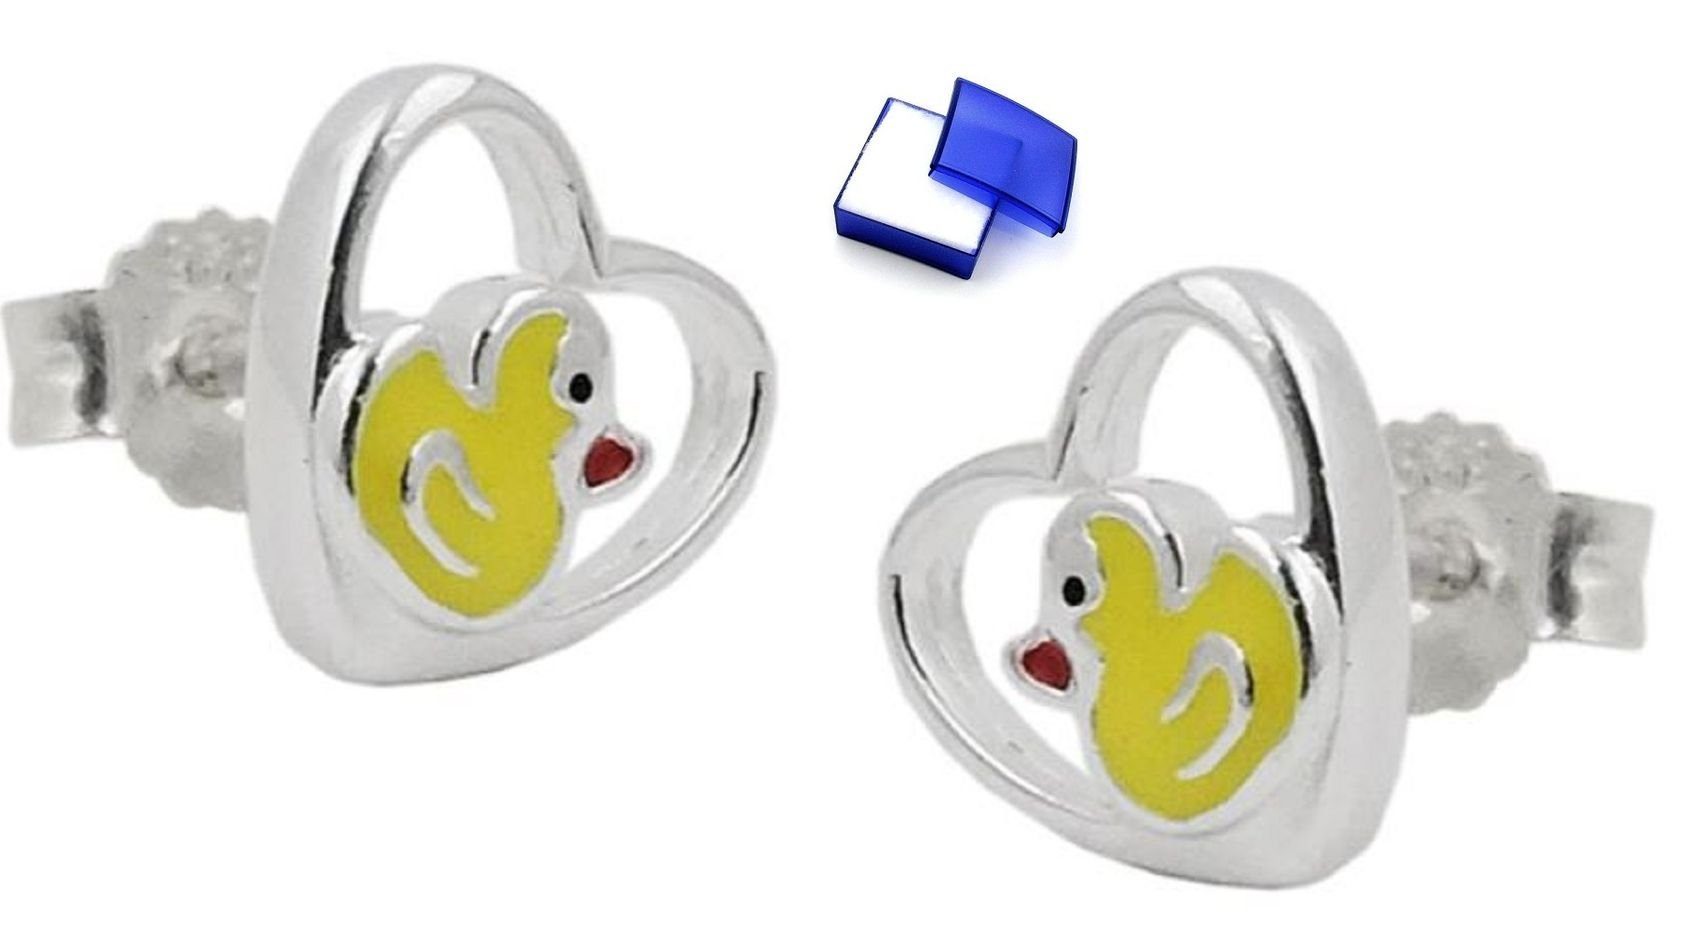 unbespielt Paar Ohrstecker Ohrstecker Ohrringe kleine Ente im Herz farbig lackiert 925 Silber 8 mm inklusive Schmuckbox, Silberschmuck für Kinder